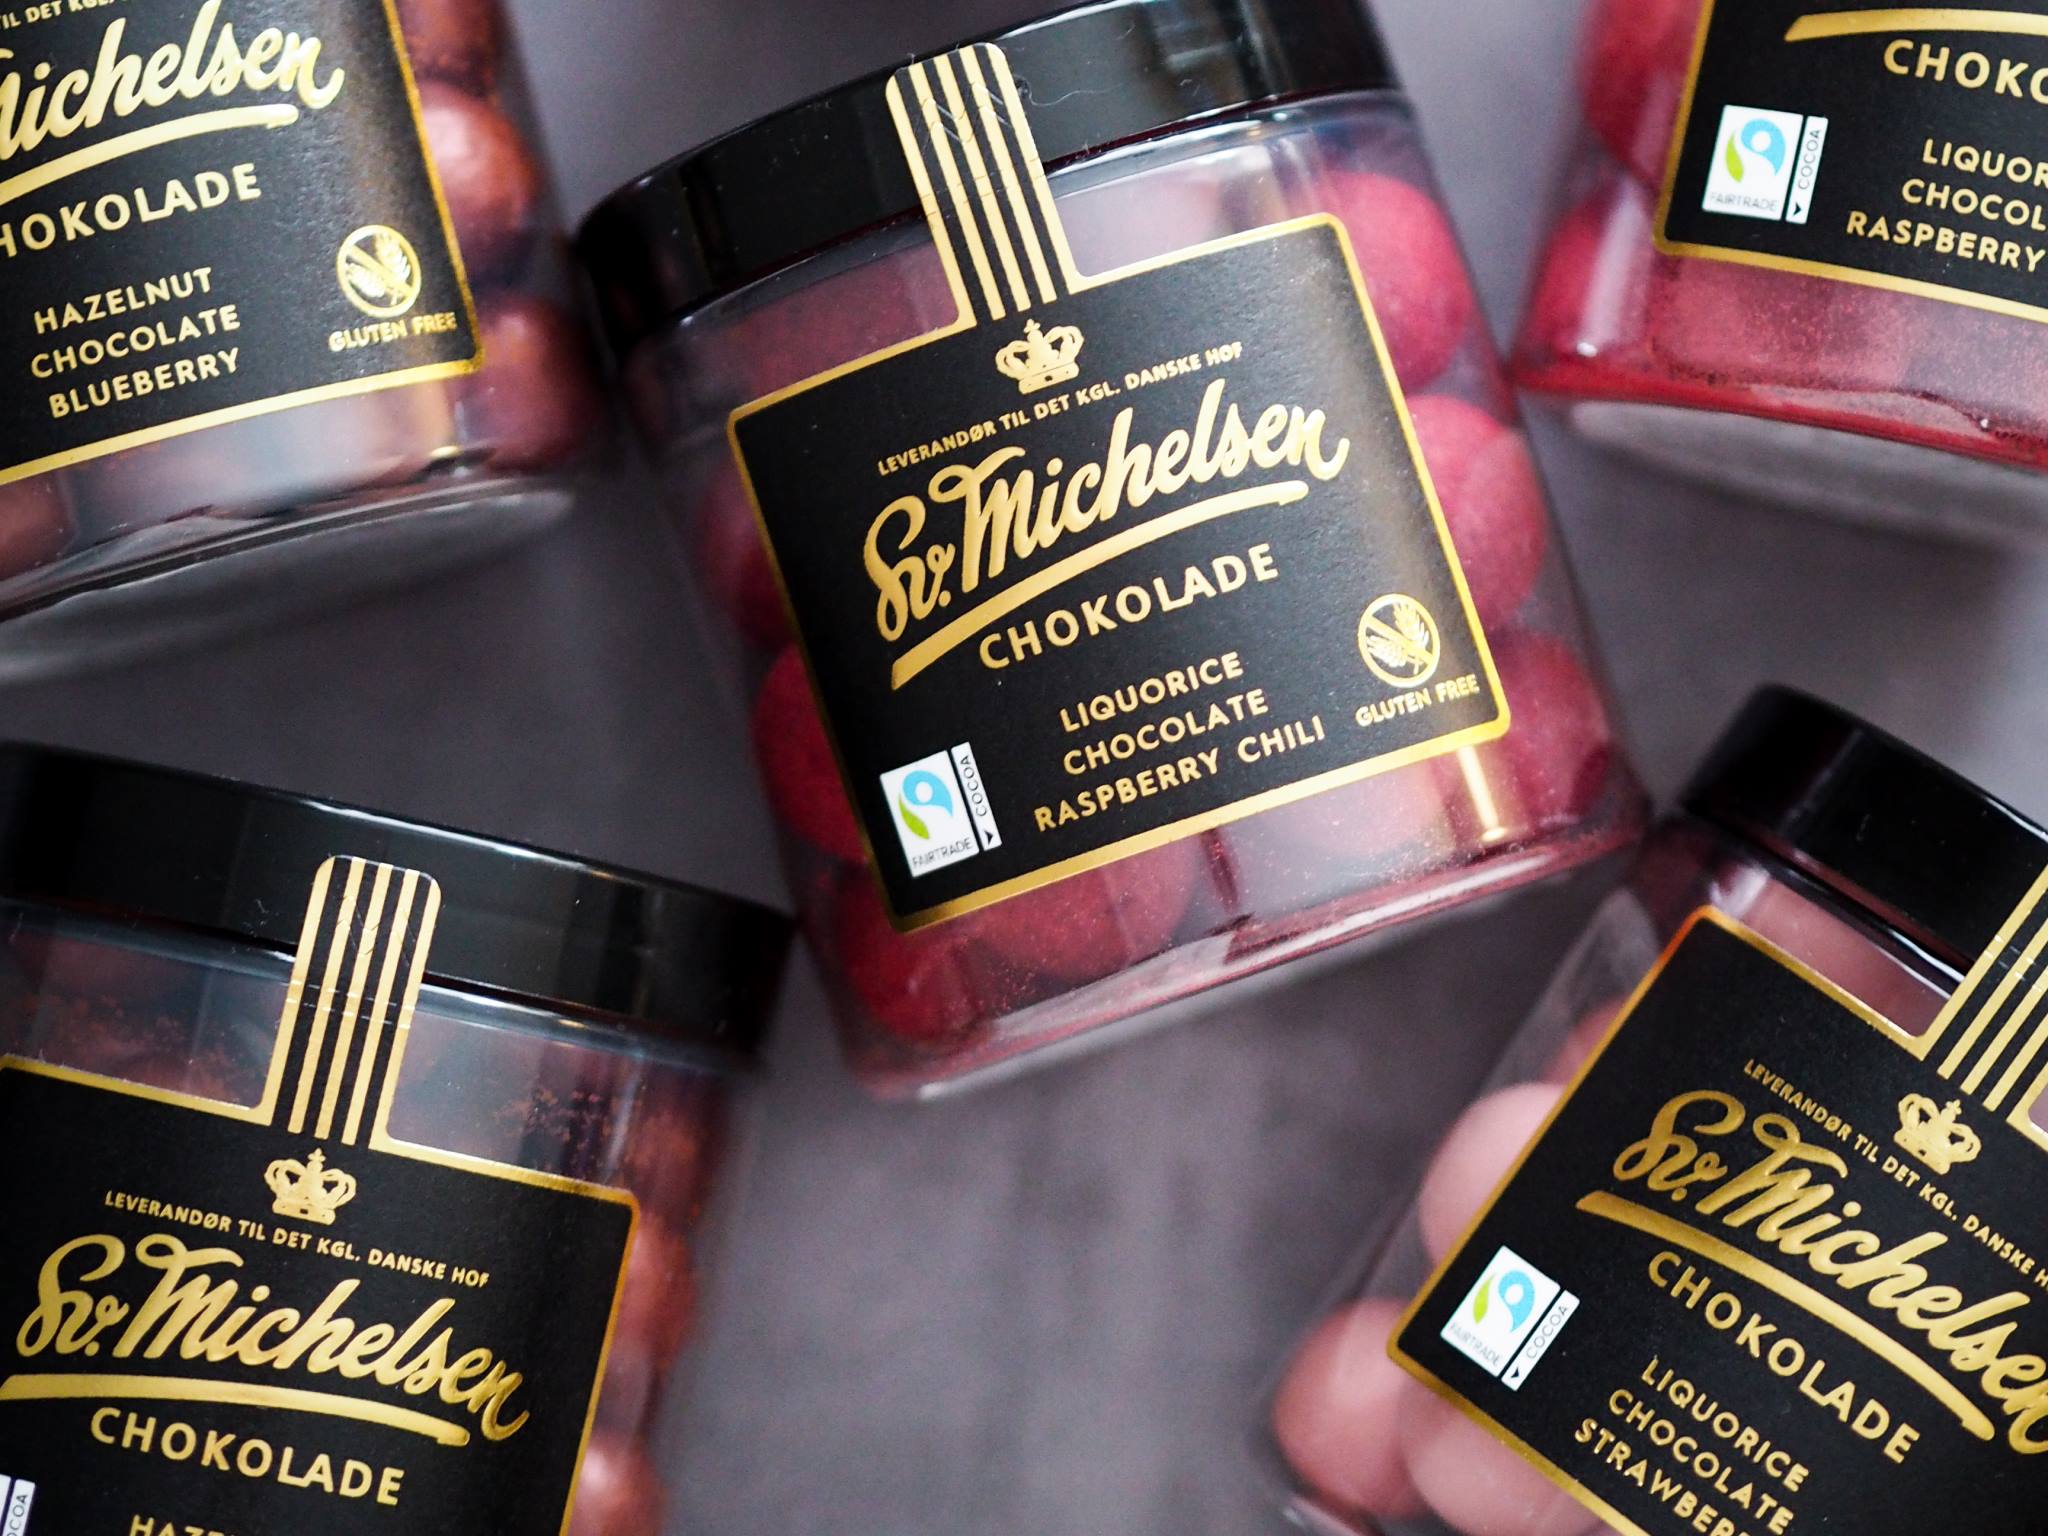 Sv. Michelsen Chokolade - Handmade luxury Danish lakrids liquorice and Chocolate